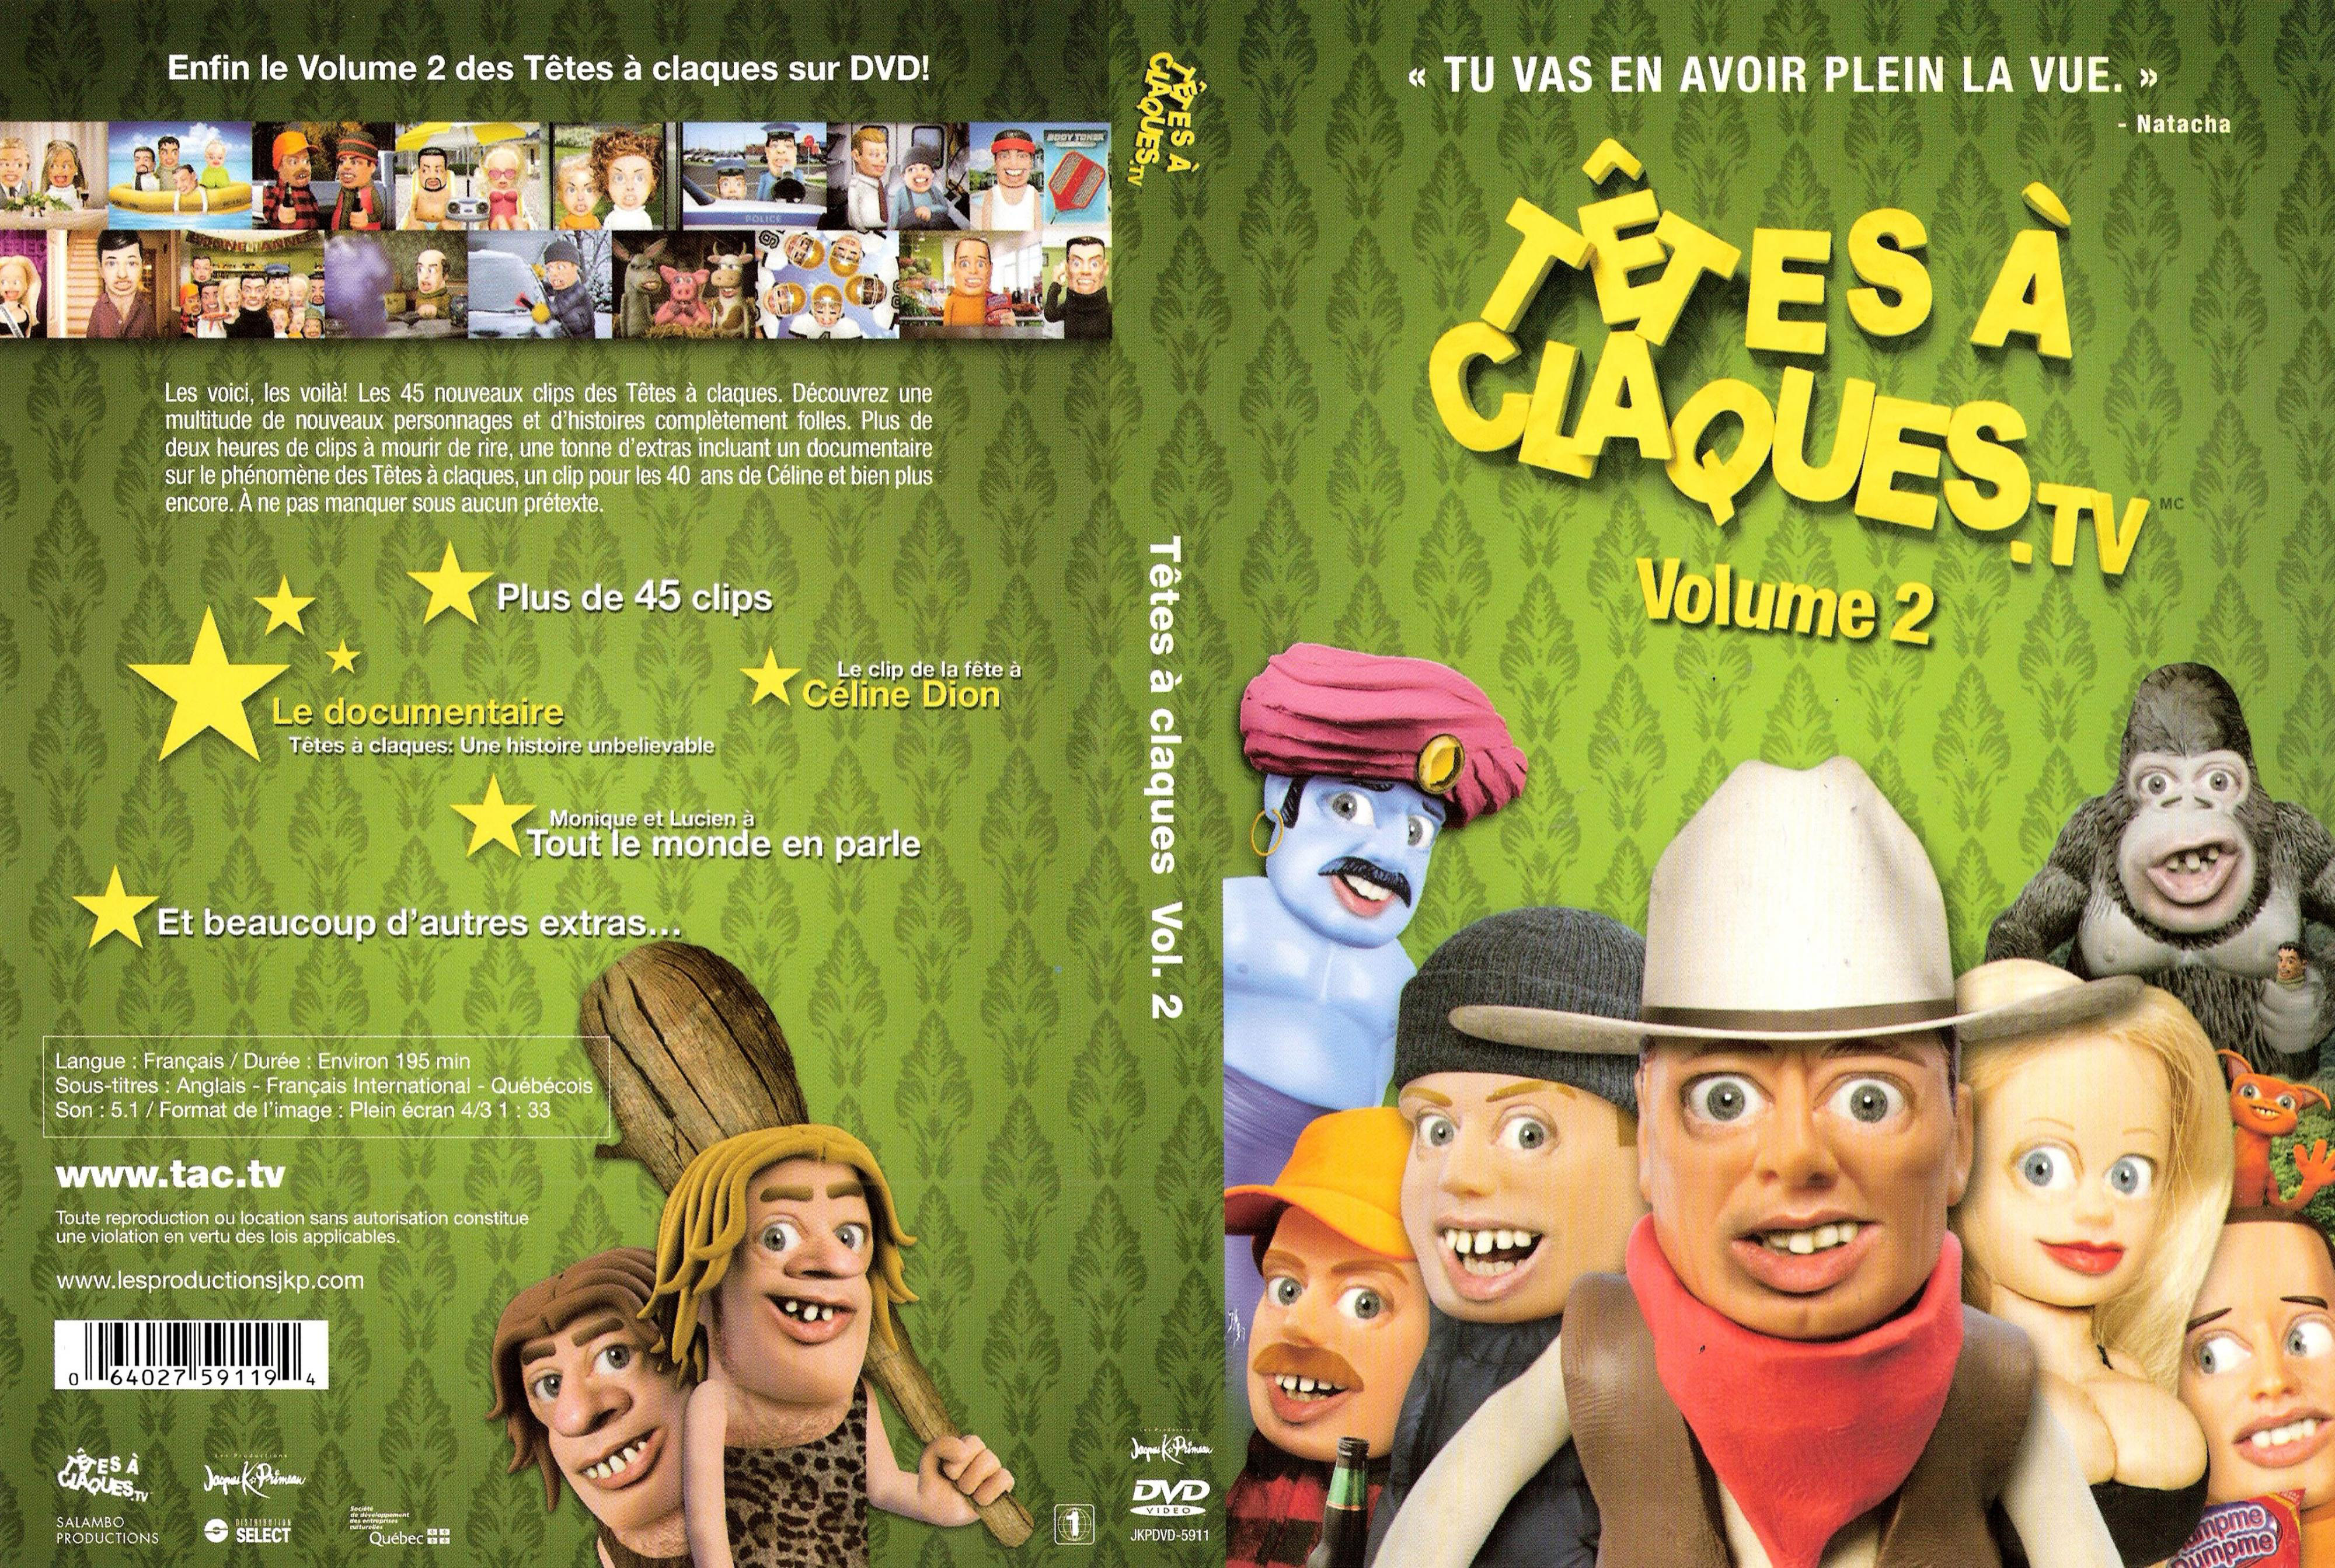 Jaquette DVD Tetes  claques vol 2